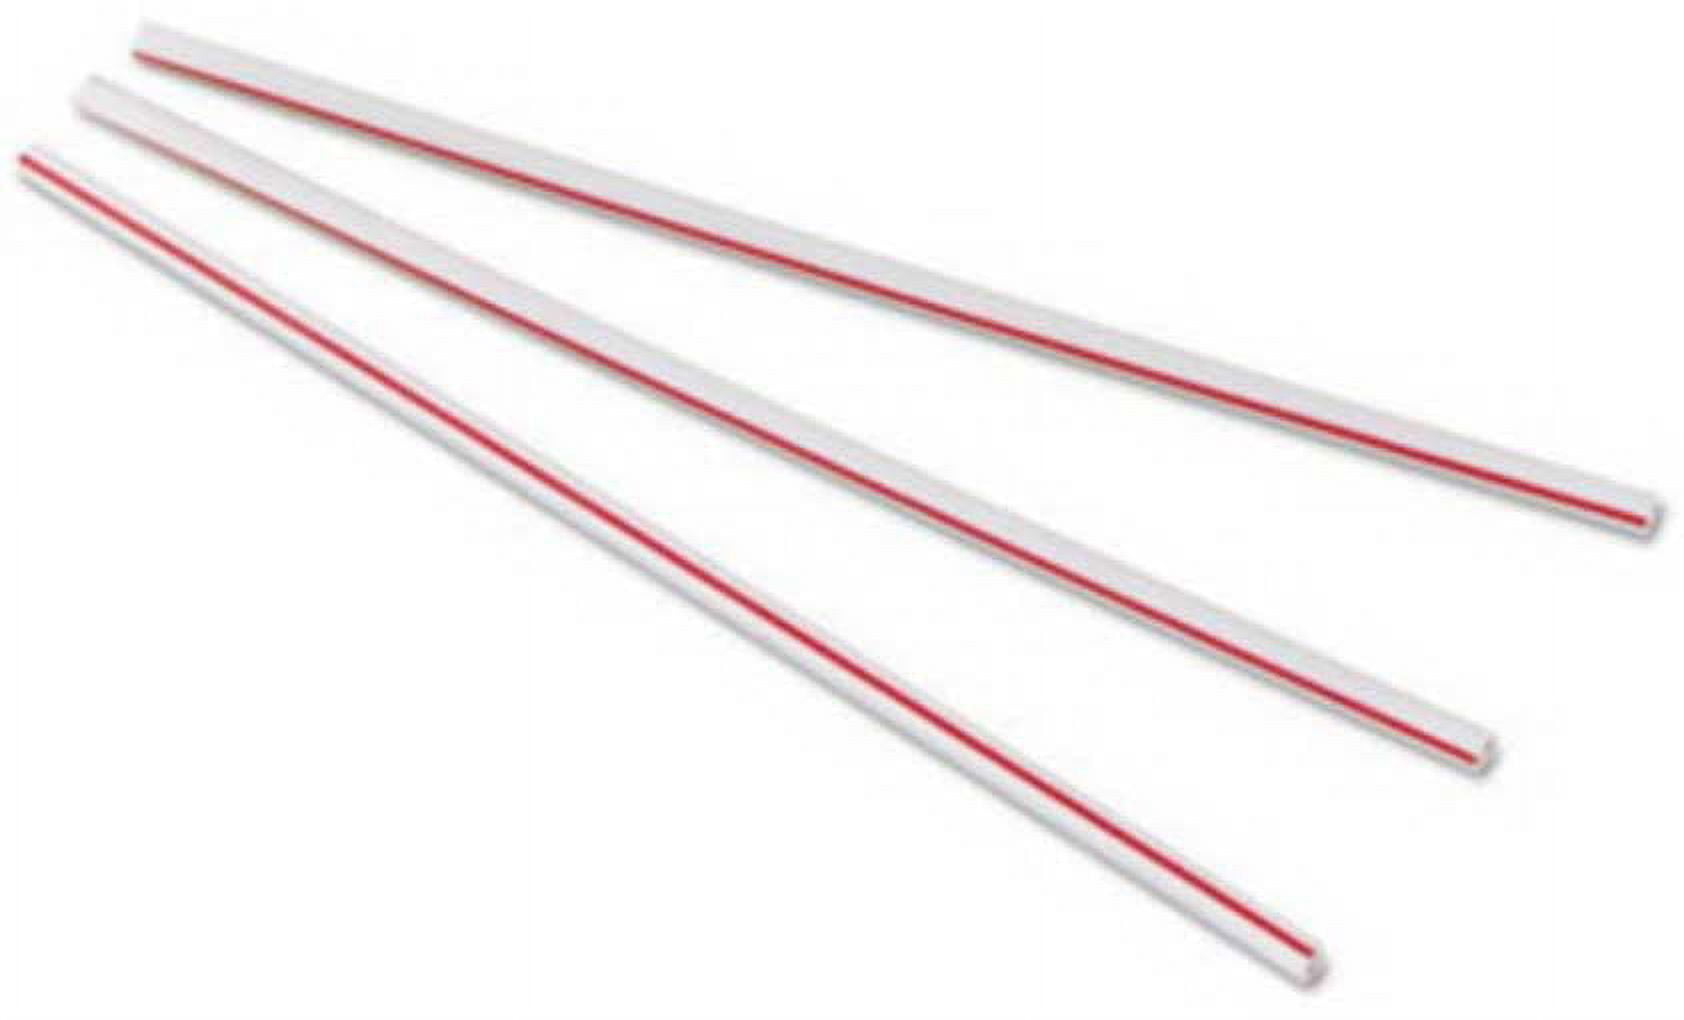 Plastic 5 Stir Sticks, Case Of 10,000